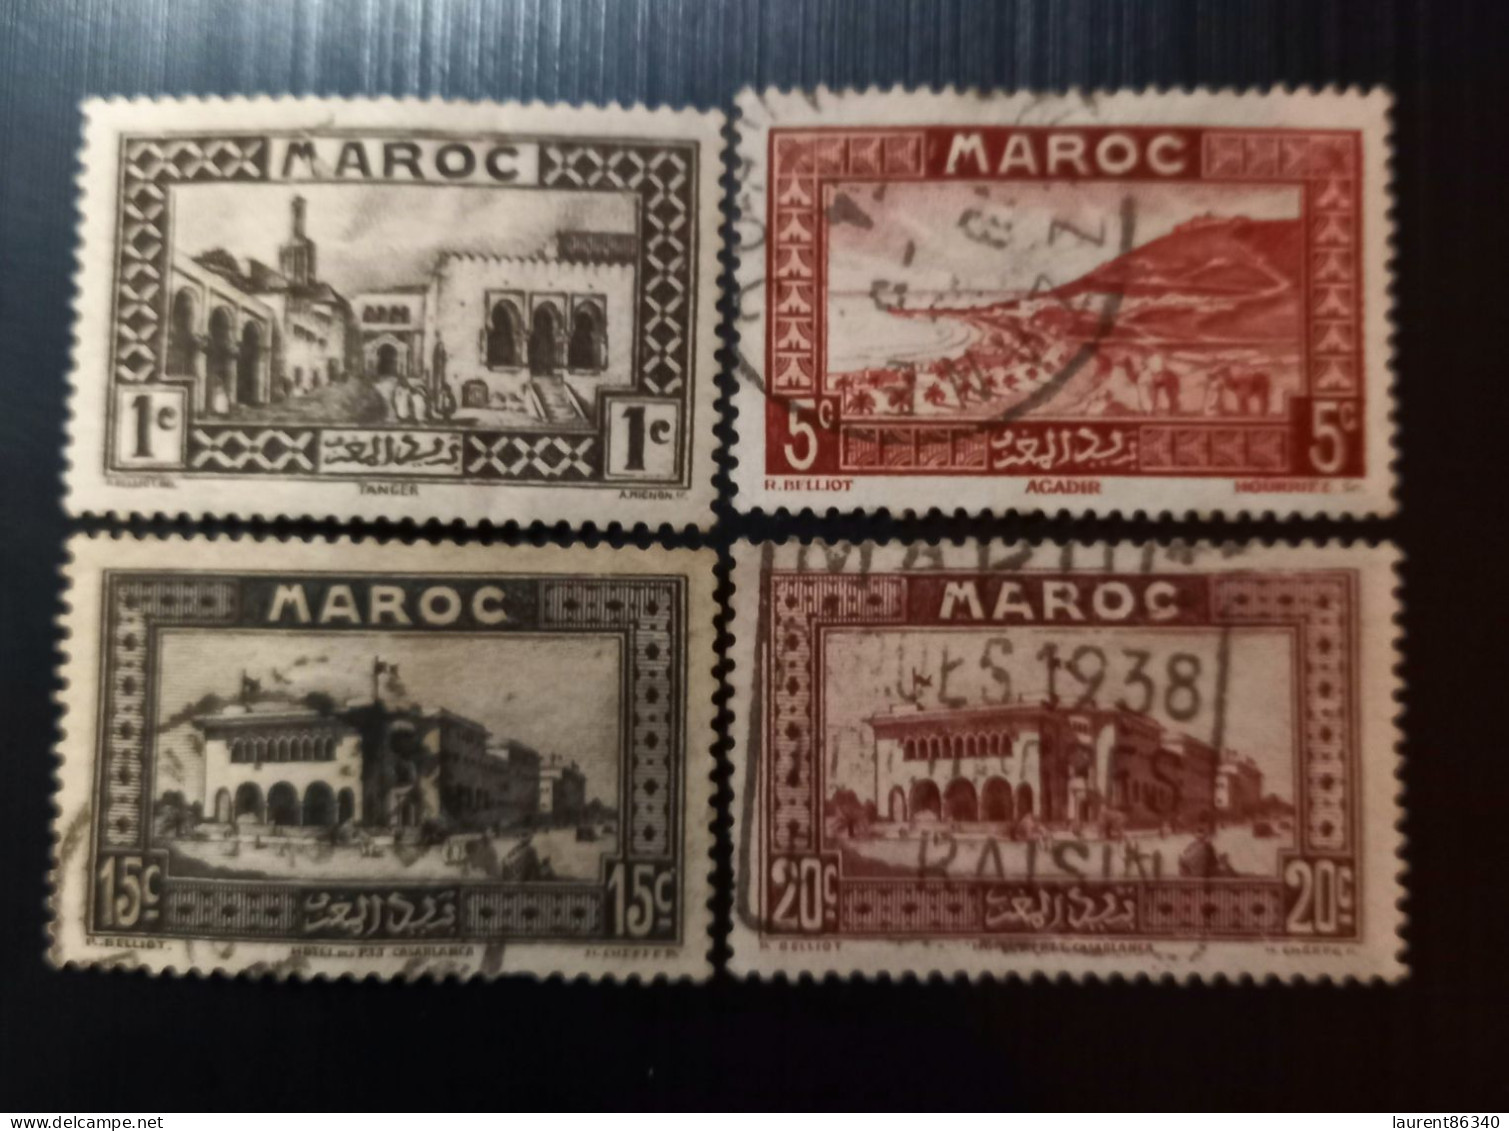 Maroc Poste Française 1933 Motifs Locaux Modèle: R. Beliot Gravure: Del Rieu Lot 1 - Used Stamps